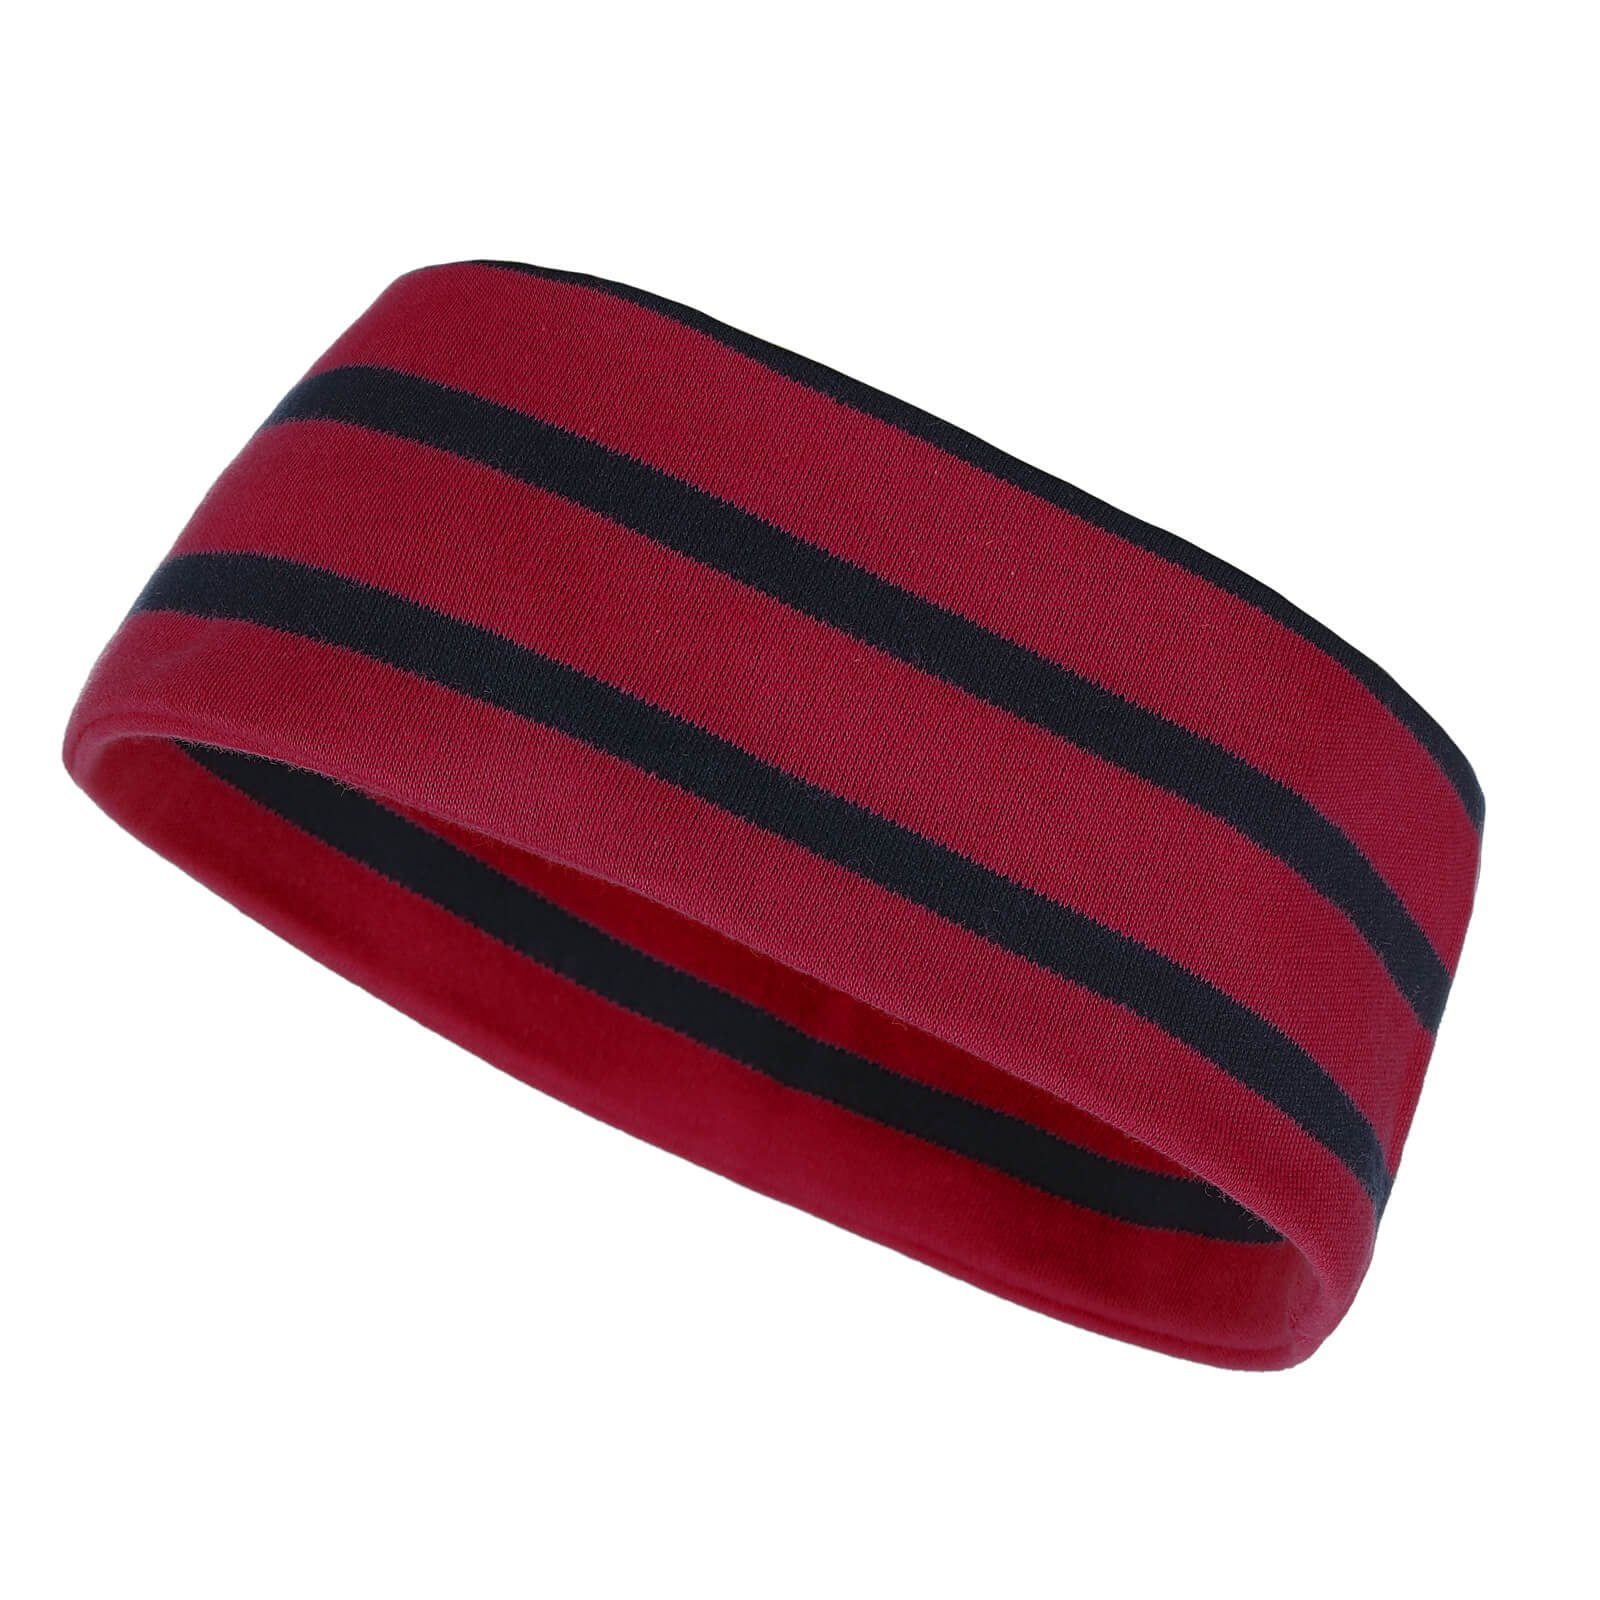 Baumwolle Kinder Kopfband und Maritim Unisex Erwachsene zweilagig Stirnband für modAS blau / (31) rot